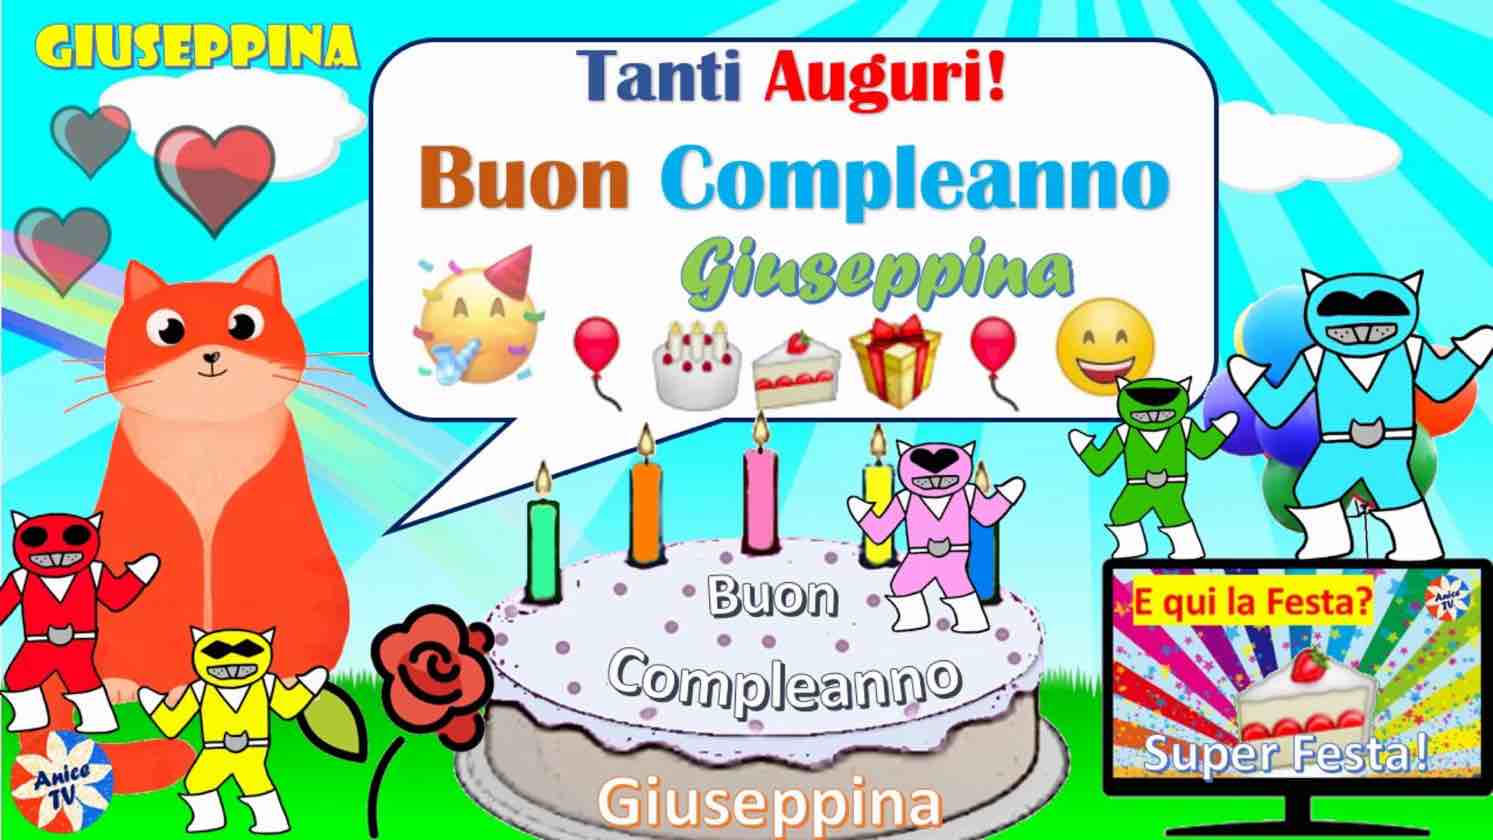 Giuseppina 24343